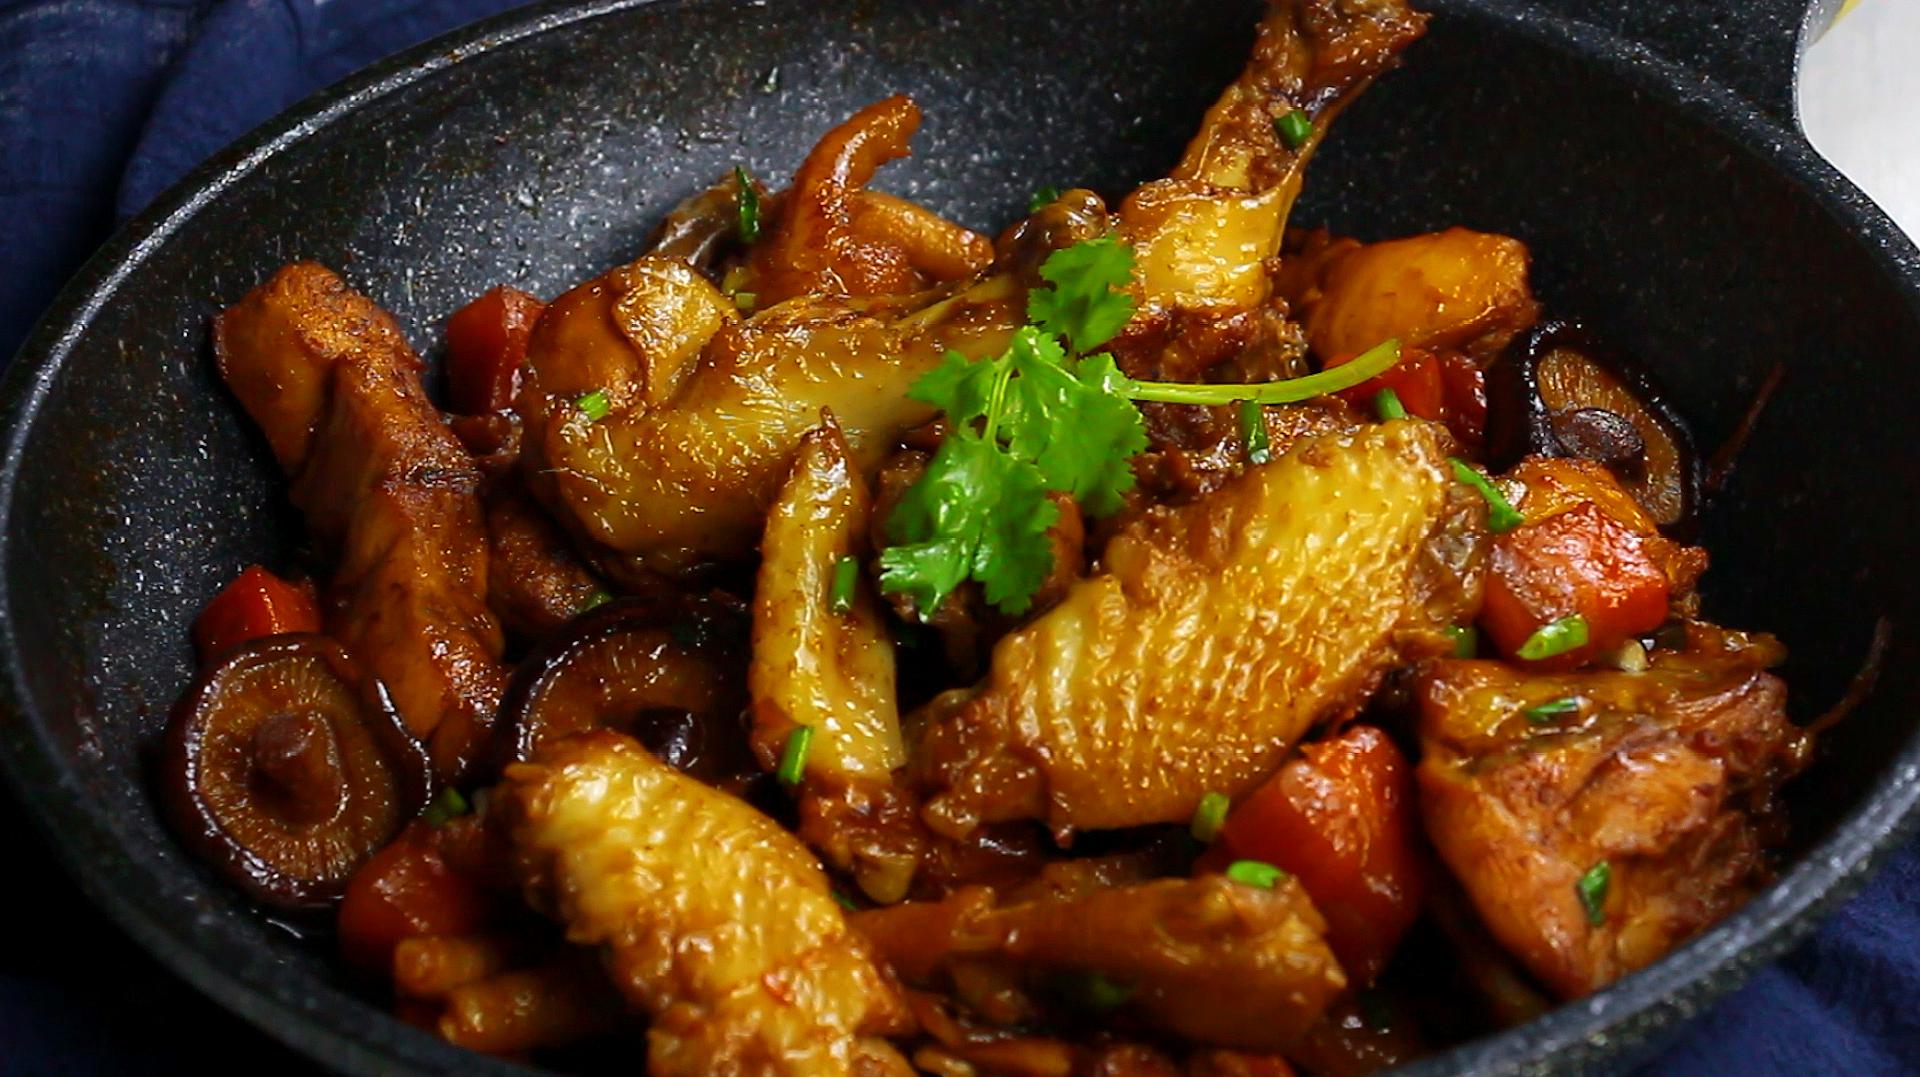 红烧鸡的家常做法,比大厨师长做的辣子鸡好吃多了!做法超级简单